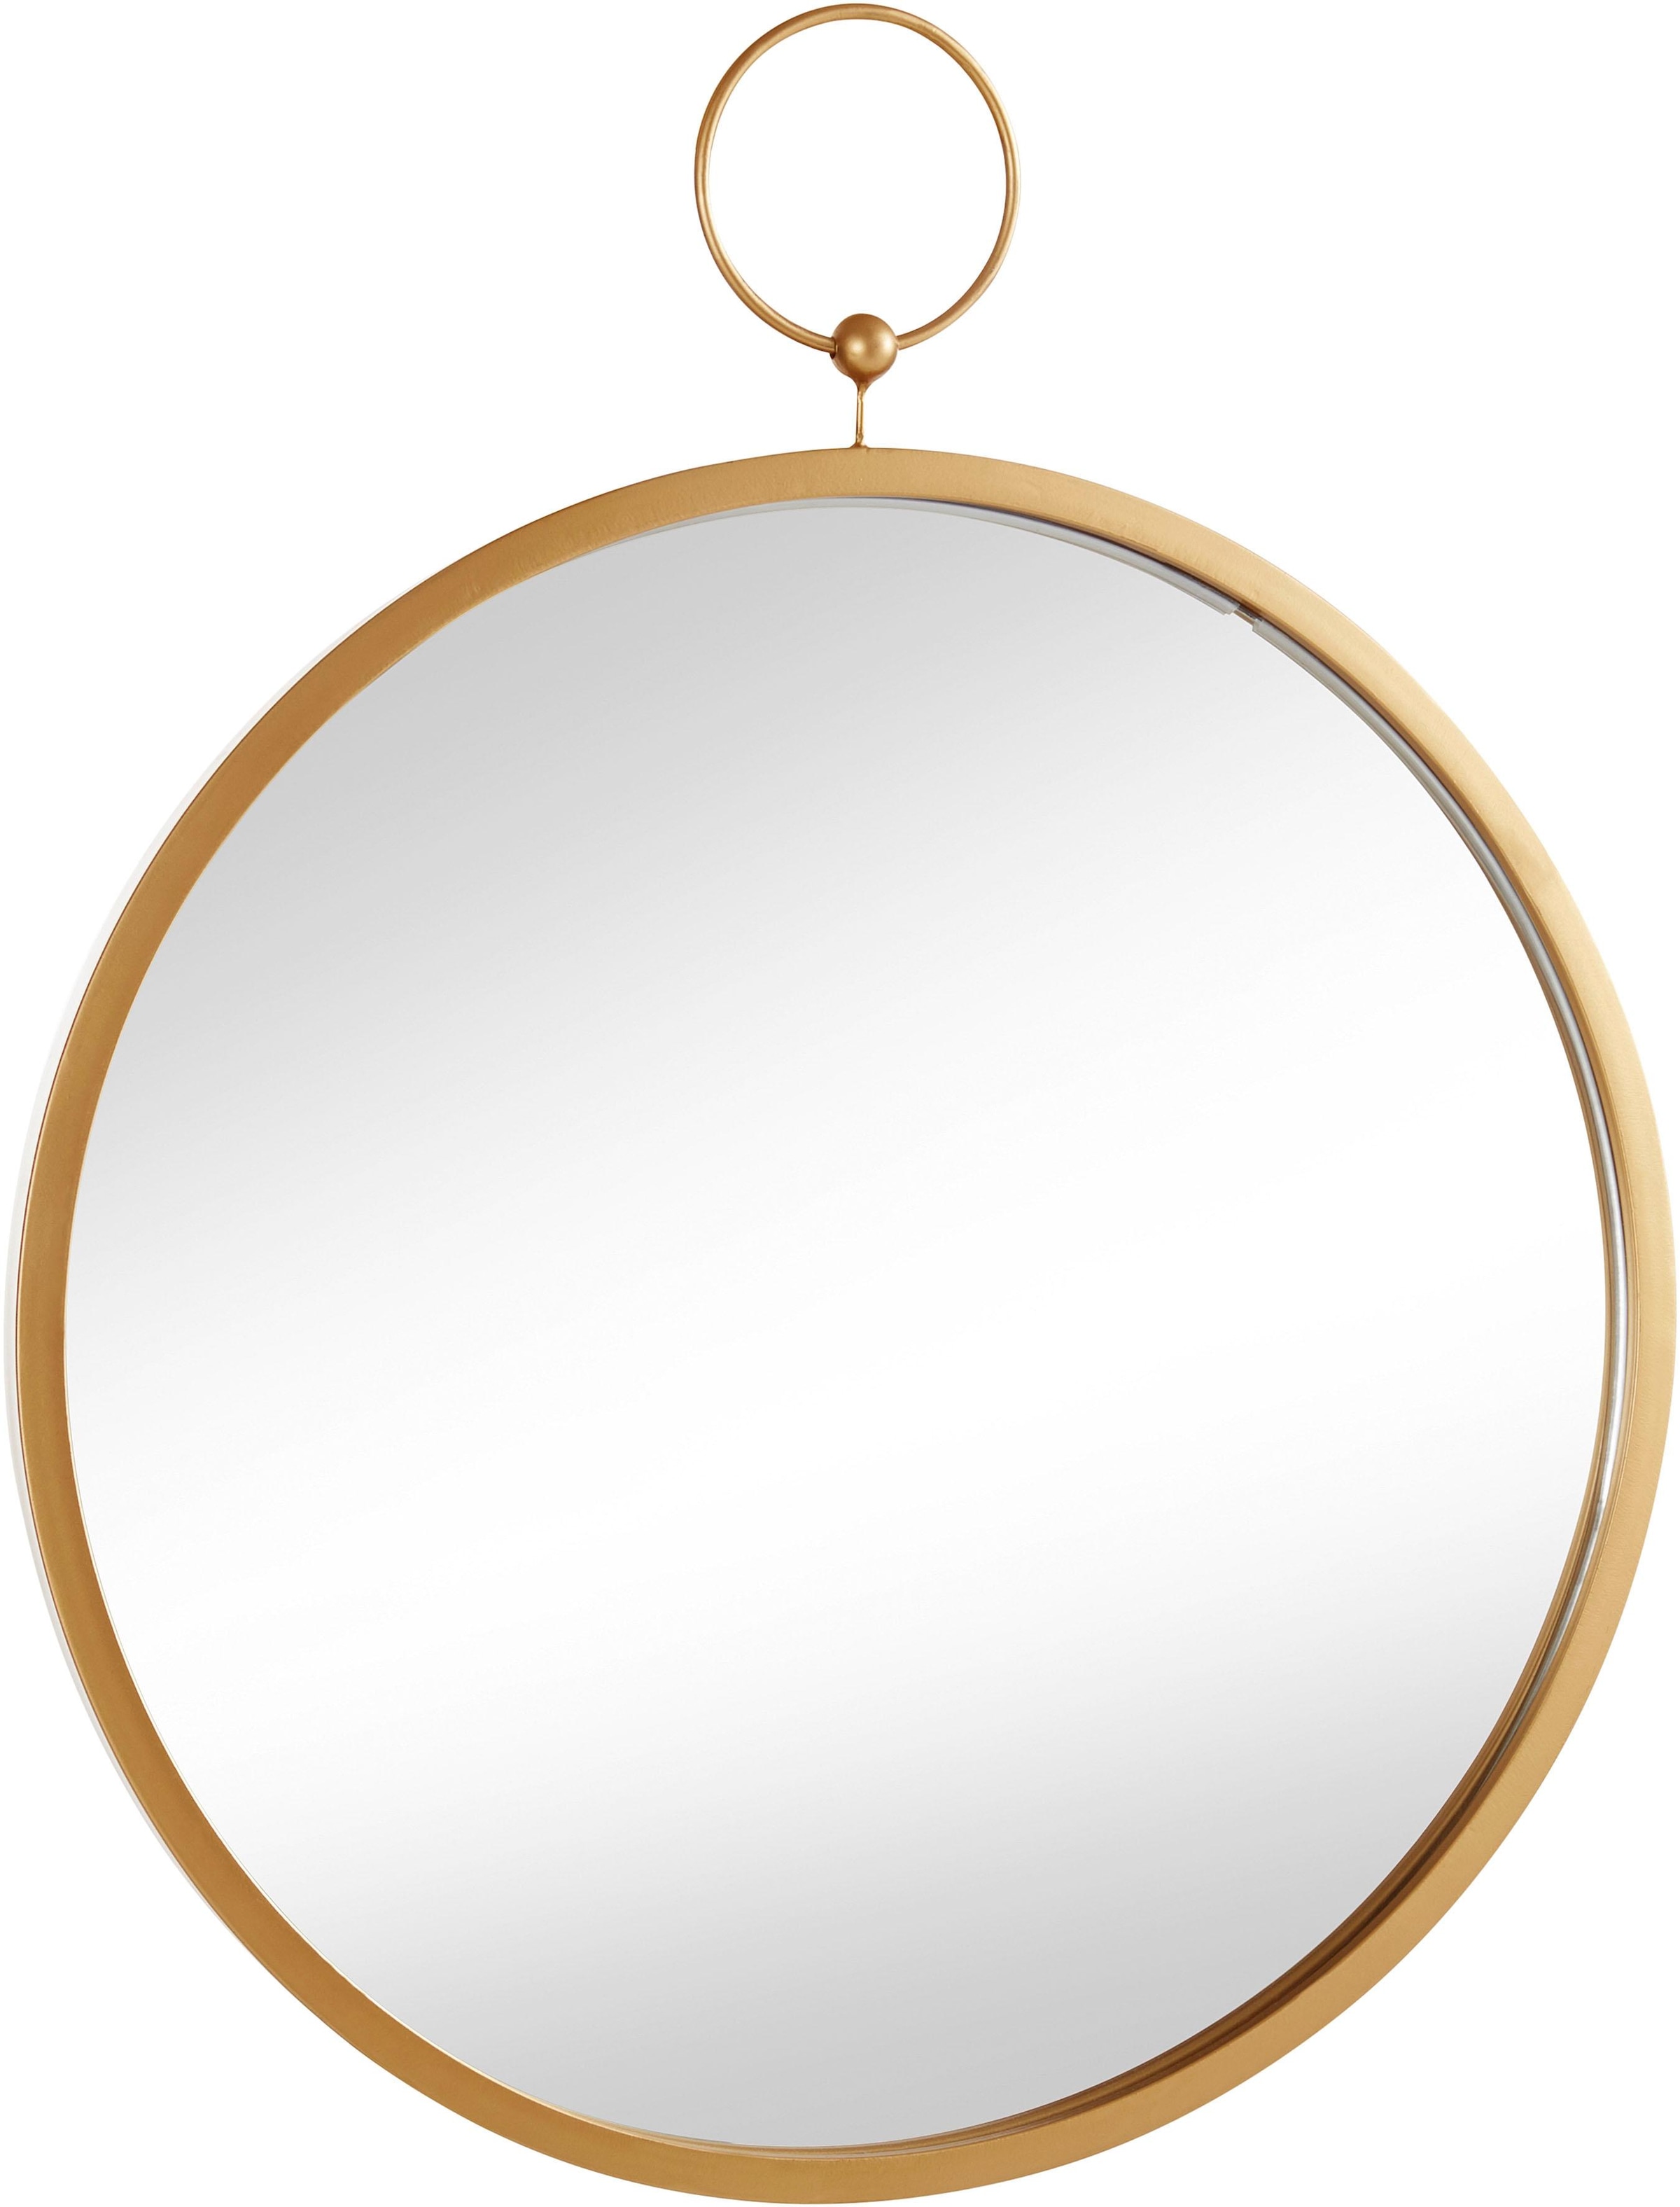 Dekospiegel, Dekospiegel, Wandspiegel, rund, Ø 61 cm, Rahmen aus Metall, goldfarben